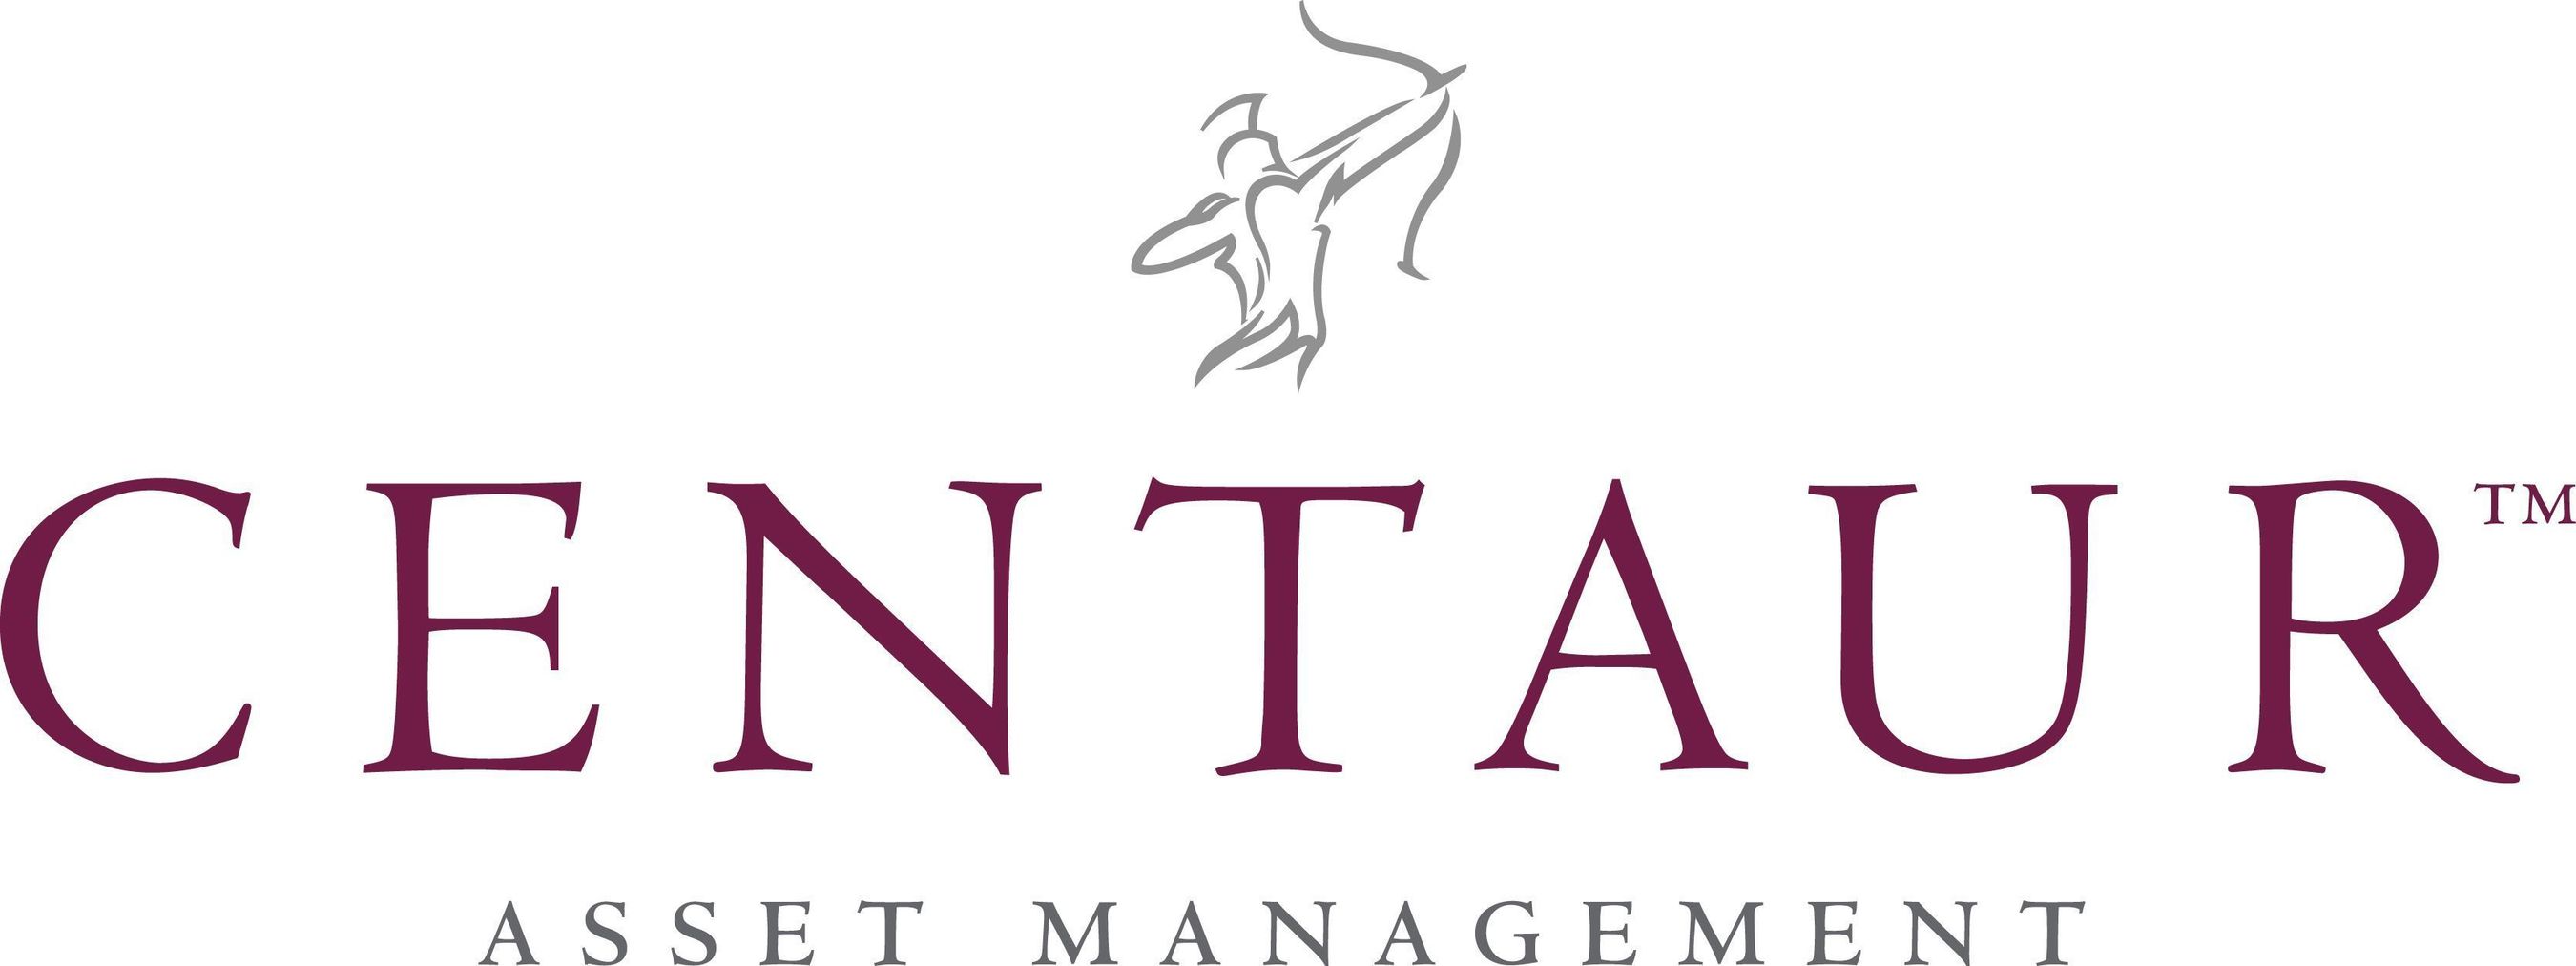 Centaur Asset Management Logo (PRNewsFoto/Centaur Asset Management)